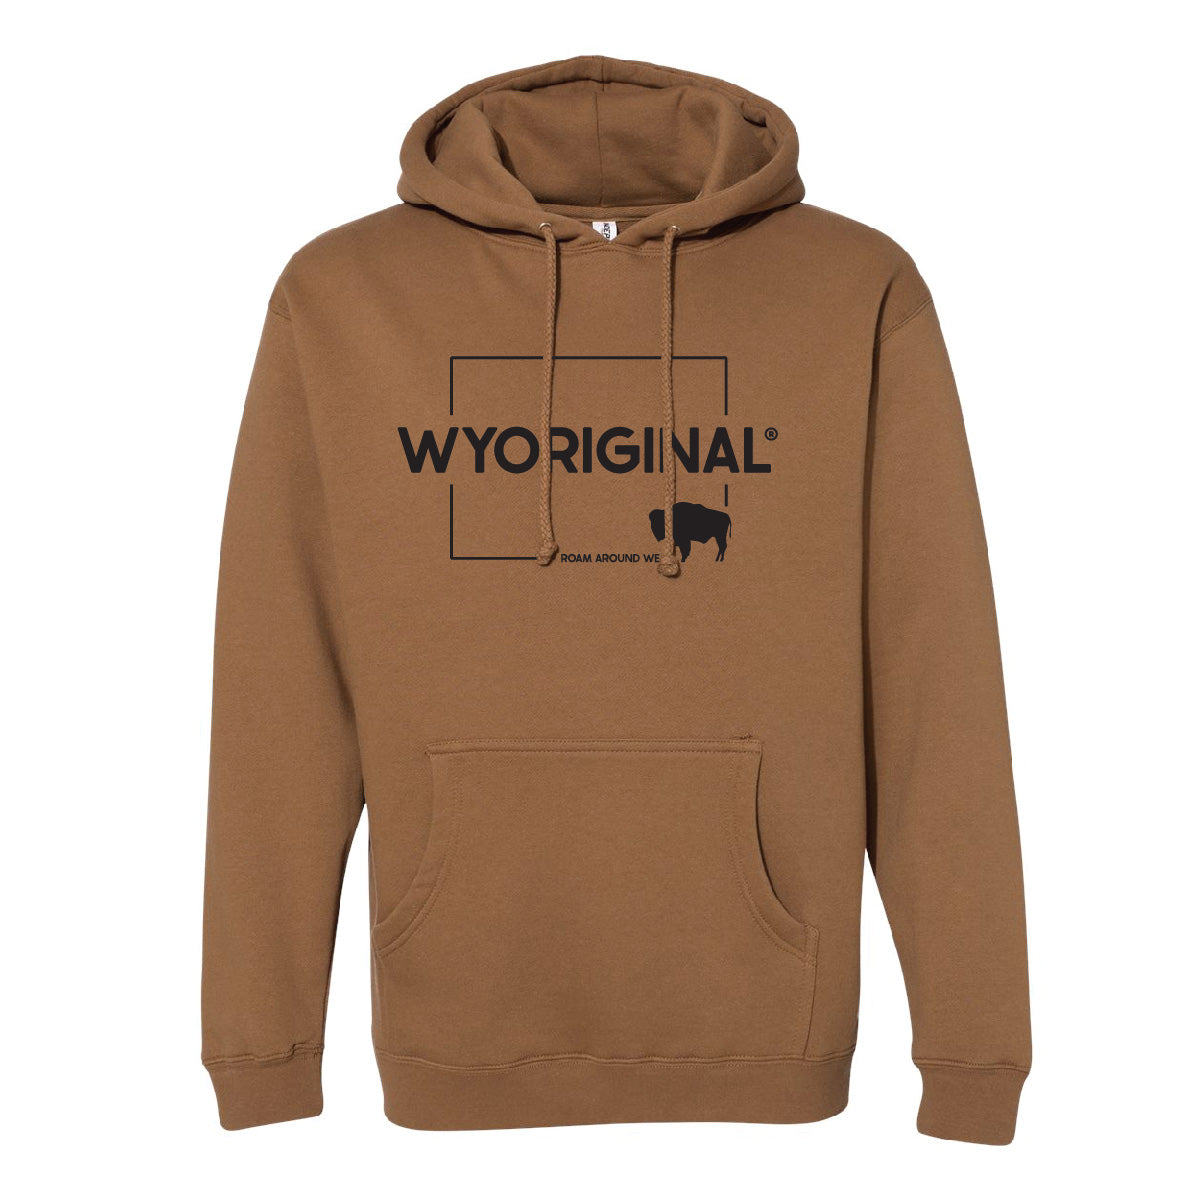 Wyoriginal unisex hoodie. Brown and black hoodie. Heavy weight Wyoming hoodie. Roam Around Wear is a Wyoming t-shirt company based in Gillette, Wyoming